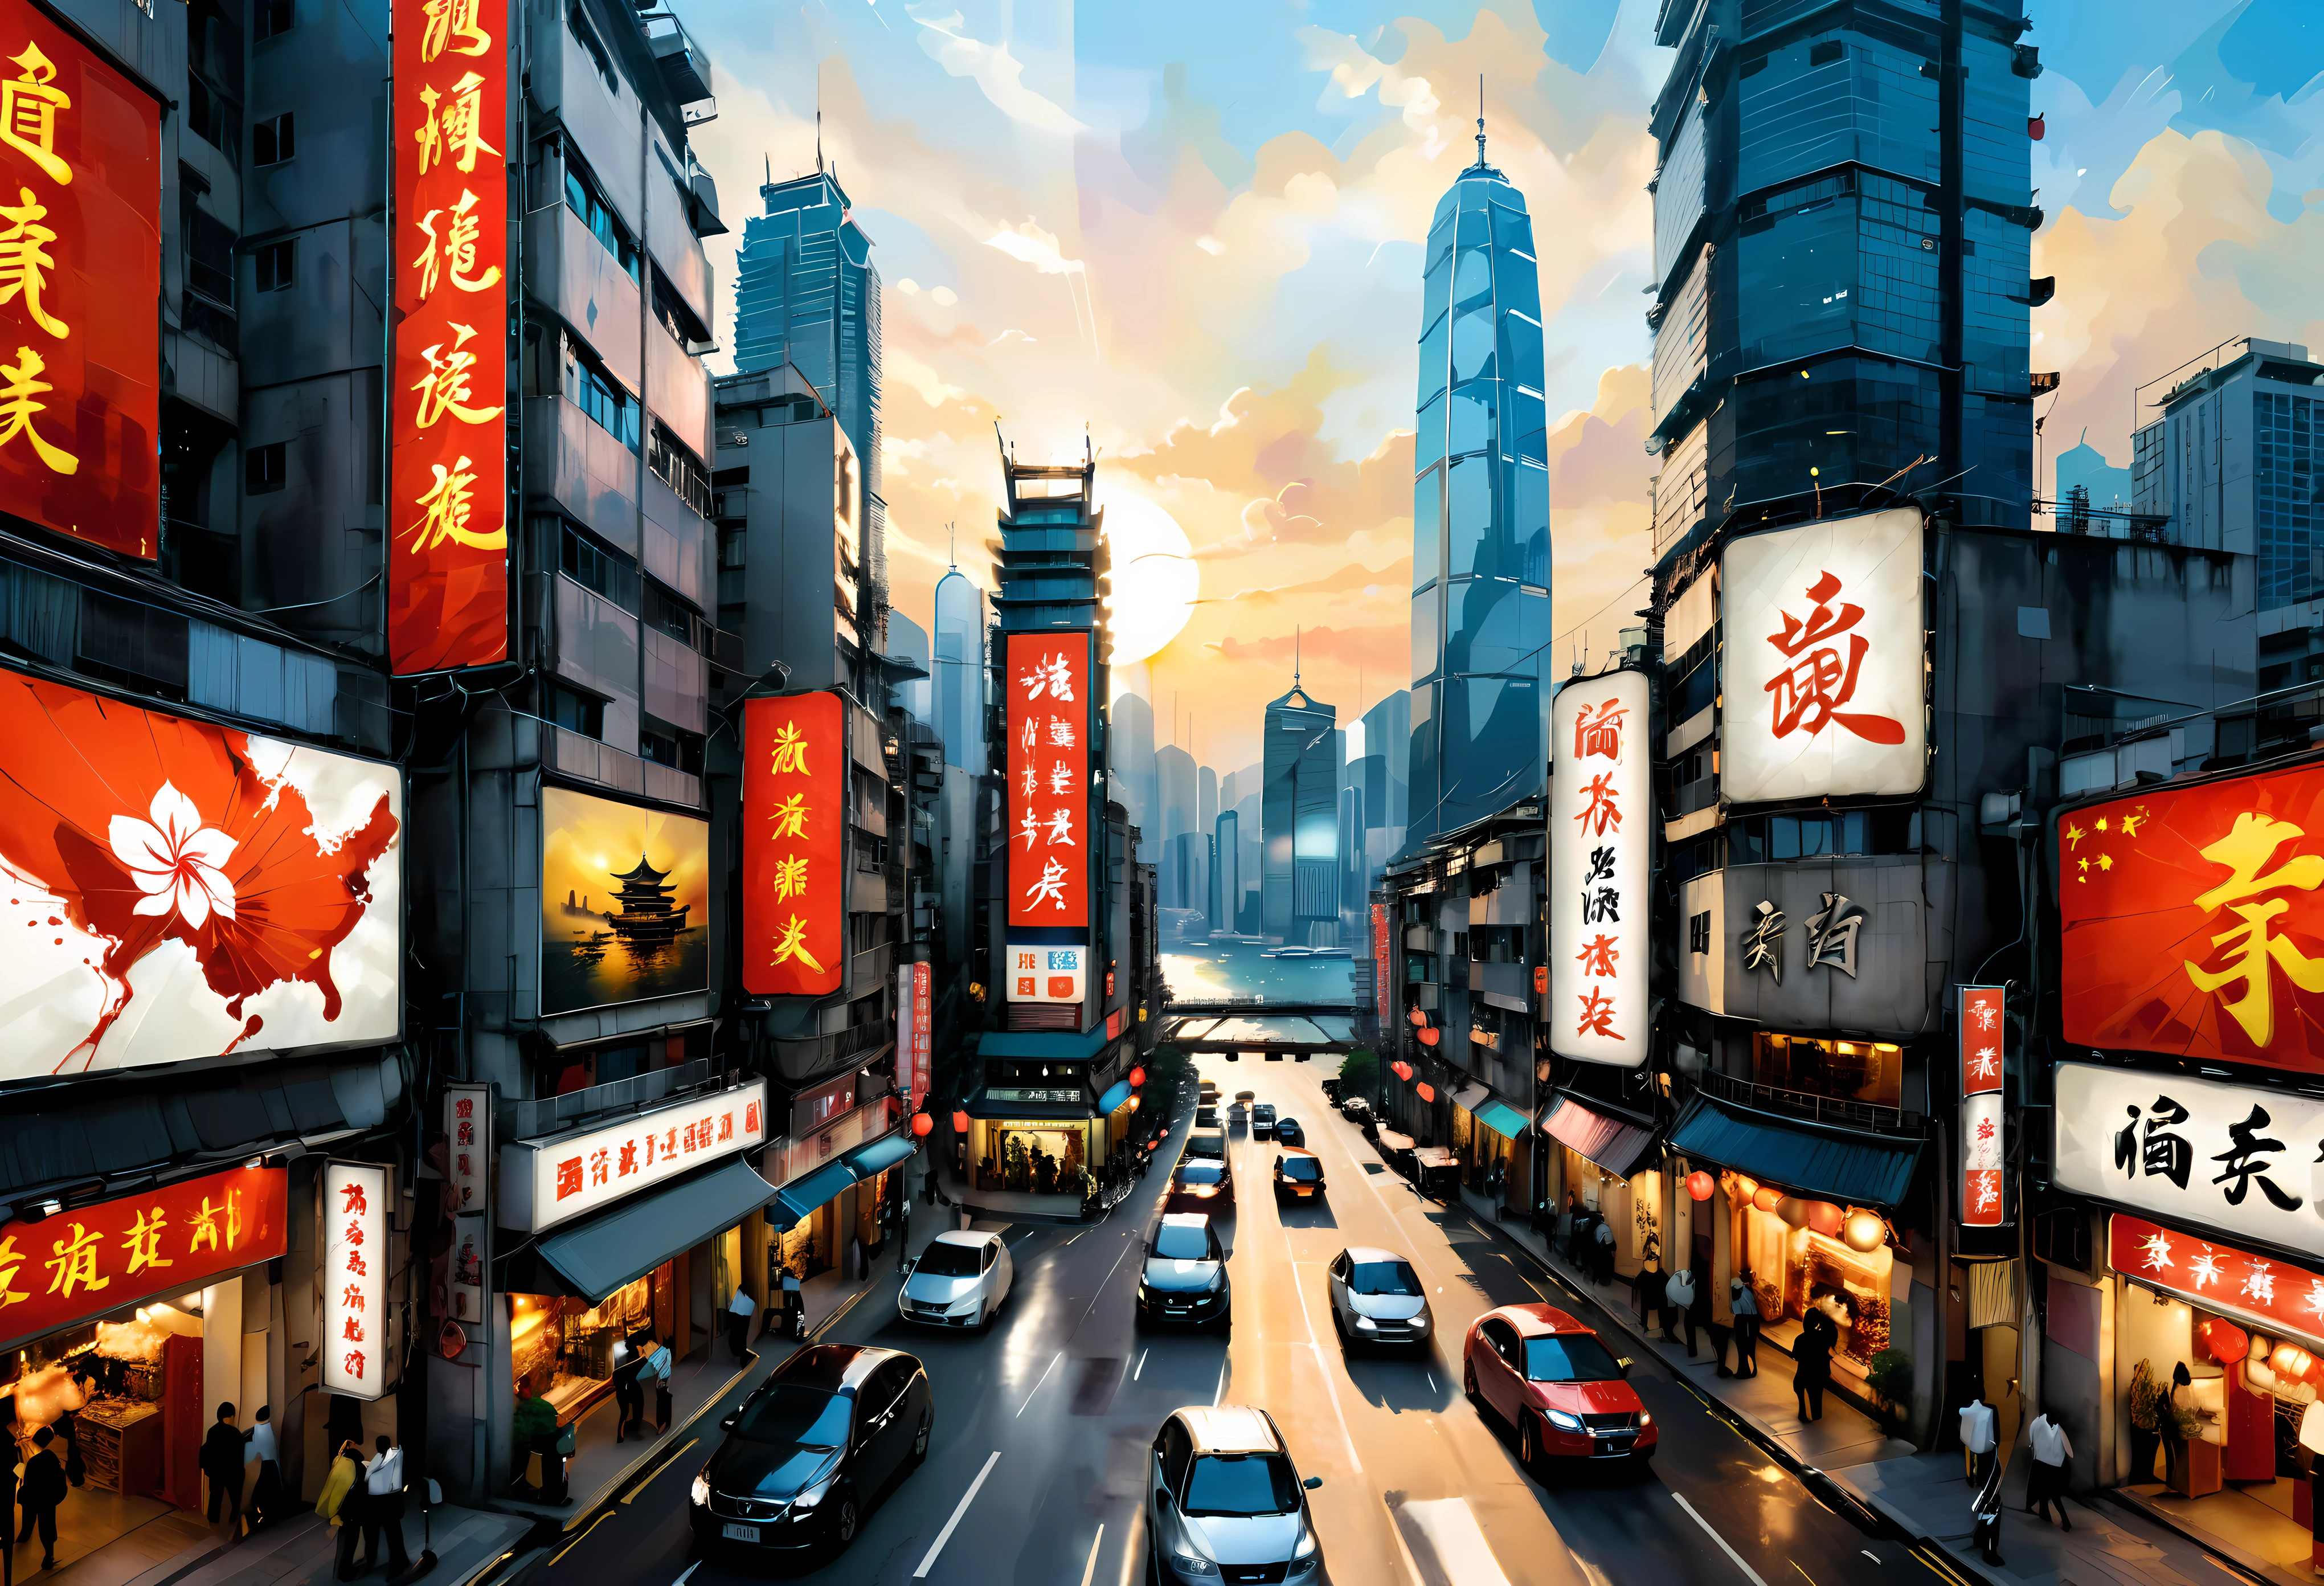 ((吴冠中风格绘画):1.2),((中国水墨画):1.2),((西方绘画观念):1.2),((传统主题的现代诠释)1.1), ((通过色彩和线条创造独特的视觉效果):1.1),((鸟瞰图):1.3) | A combination of Chinese ink art and Western painting of 鸟瞰图 of Hong Kong modern skyline, (最好的质量, 4k, 高分辨率, 杰作:1.2), 极其详细, (实际的, photo实际的:1.37), 中国水墨风格: 细腻的笔触和水墨, 西方绘画风格: 鲜艳的色彩和笔触, 香港天际线的标志性摩天大楼, 熙熙攘攘的城市街道上挤满了人和汽车, 沐浴在金色阳光下的壮丽维多利亚港, 港口中航行的中国传统船只, 霓虹灯照亮夜空, 传统与现代建筑的融合, 街道标志和广告牌上用中国传统书法书写, 服装与时尚中西文化元素的融合, 路牌和店铺名称中英文混用, 从高处俯瞰，戏剧性的视角展现了城市的垂直性, 光与影的相互作用增强了绘画的深度和维度, 混凝土的对比纹理, 玻璃, 以及城市景观中的自然, 巧妙融入代表幸运的中国符号和图案, 繁荣, 与和谐, 沉浸式体验让观众感受到香港多元而充满活力的氛围.